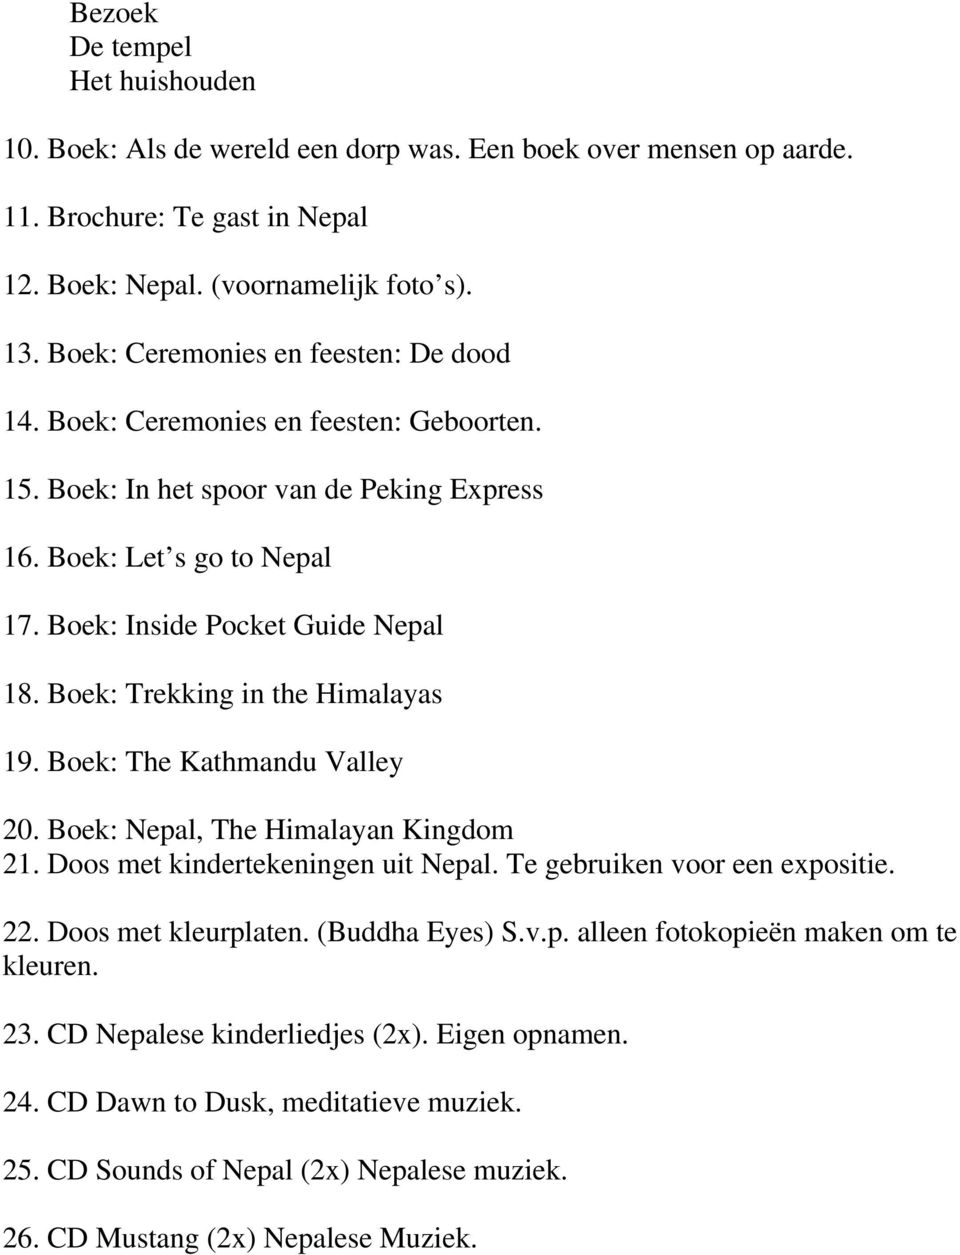 Boek: Trekking in the Himalayas 19. Boek: The Kathmandu Valley 20. Boek: Nepal, The Himalayan Kingdom 21. Doos met kindertekeningen uit Nepal. Te gebruiken voor een expositie. 22.